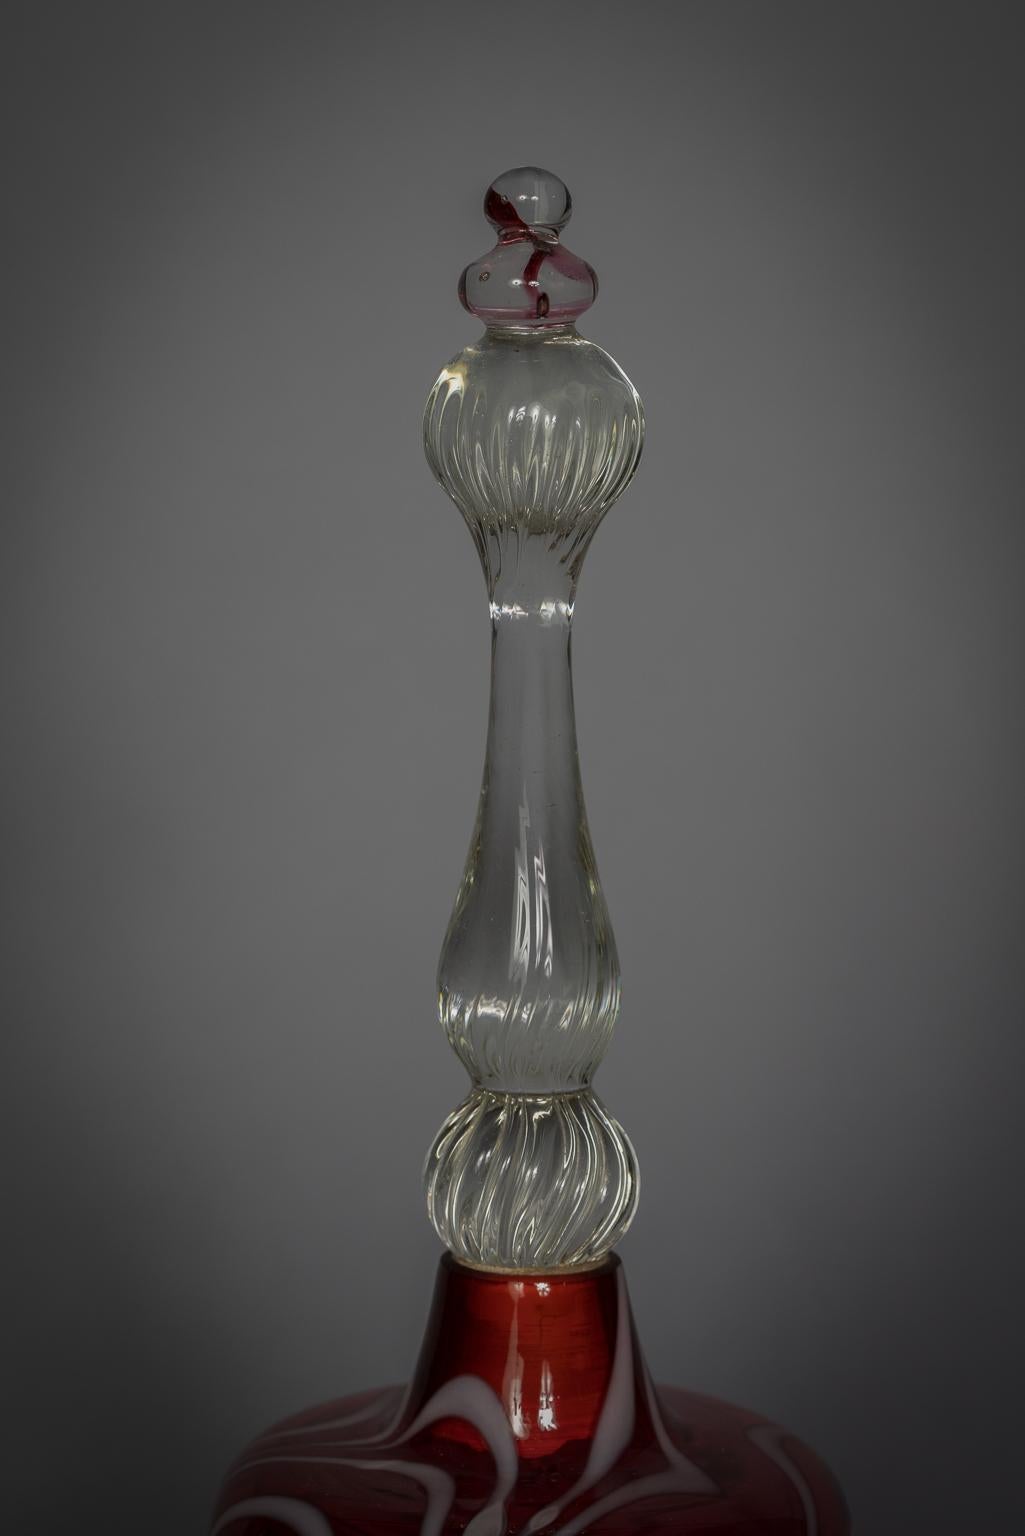 grande cloche rouge avec décoration blanche en forme de peigne et poignée transparente avec claquement en verre transparent.